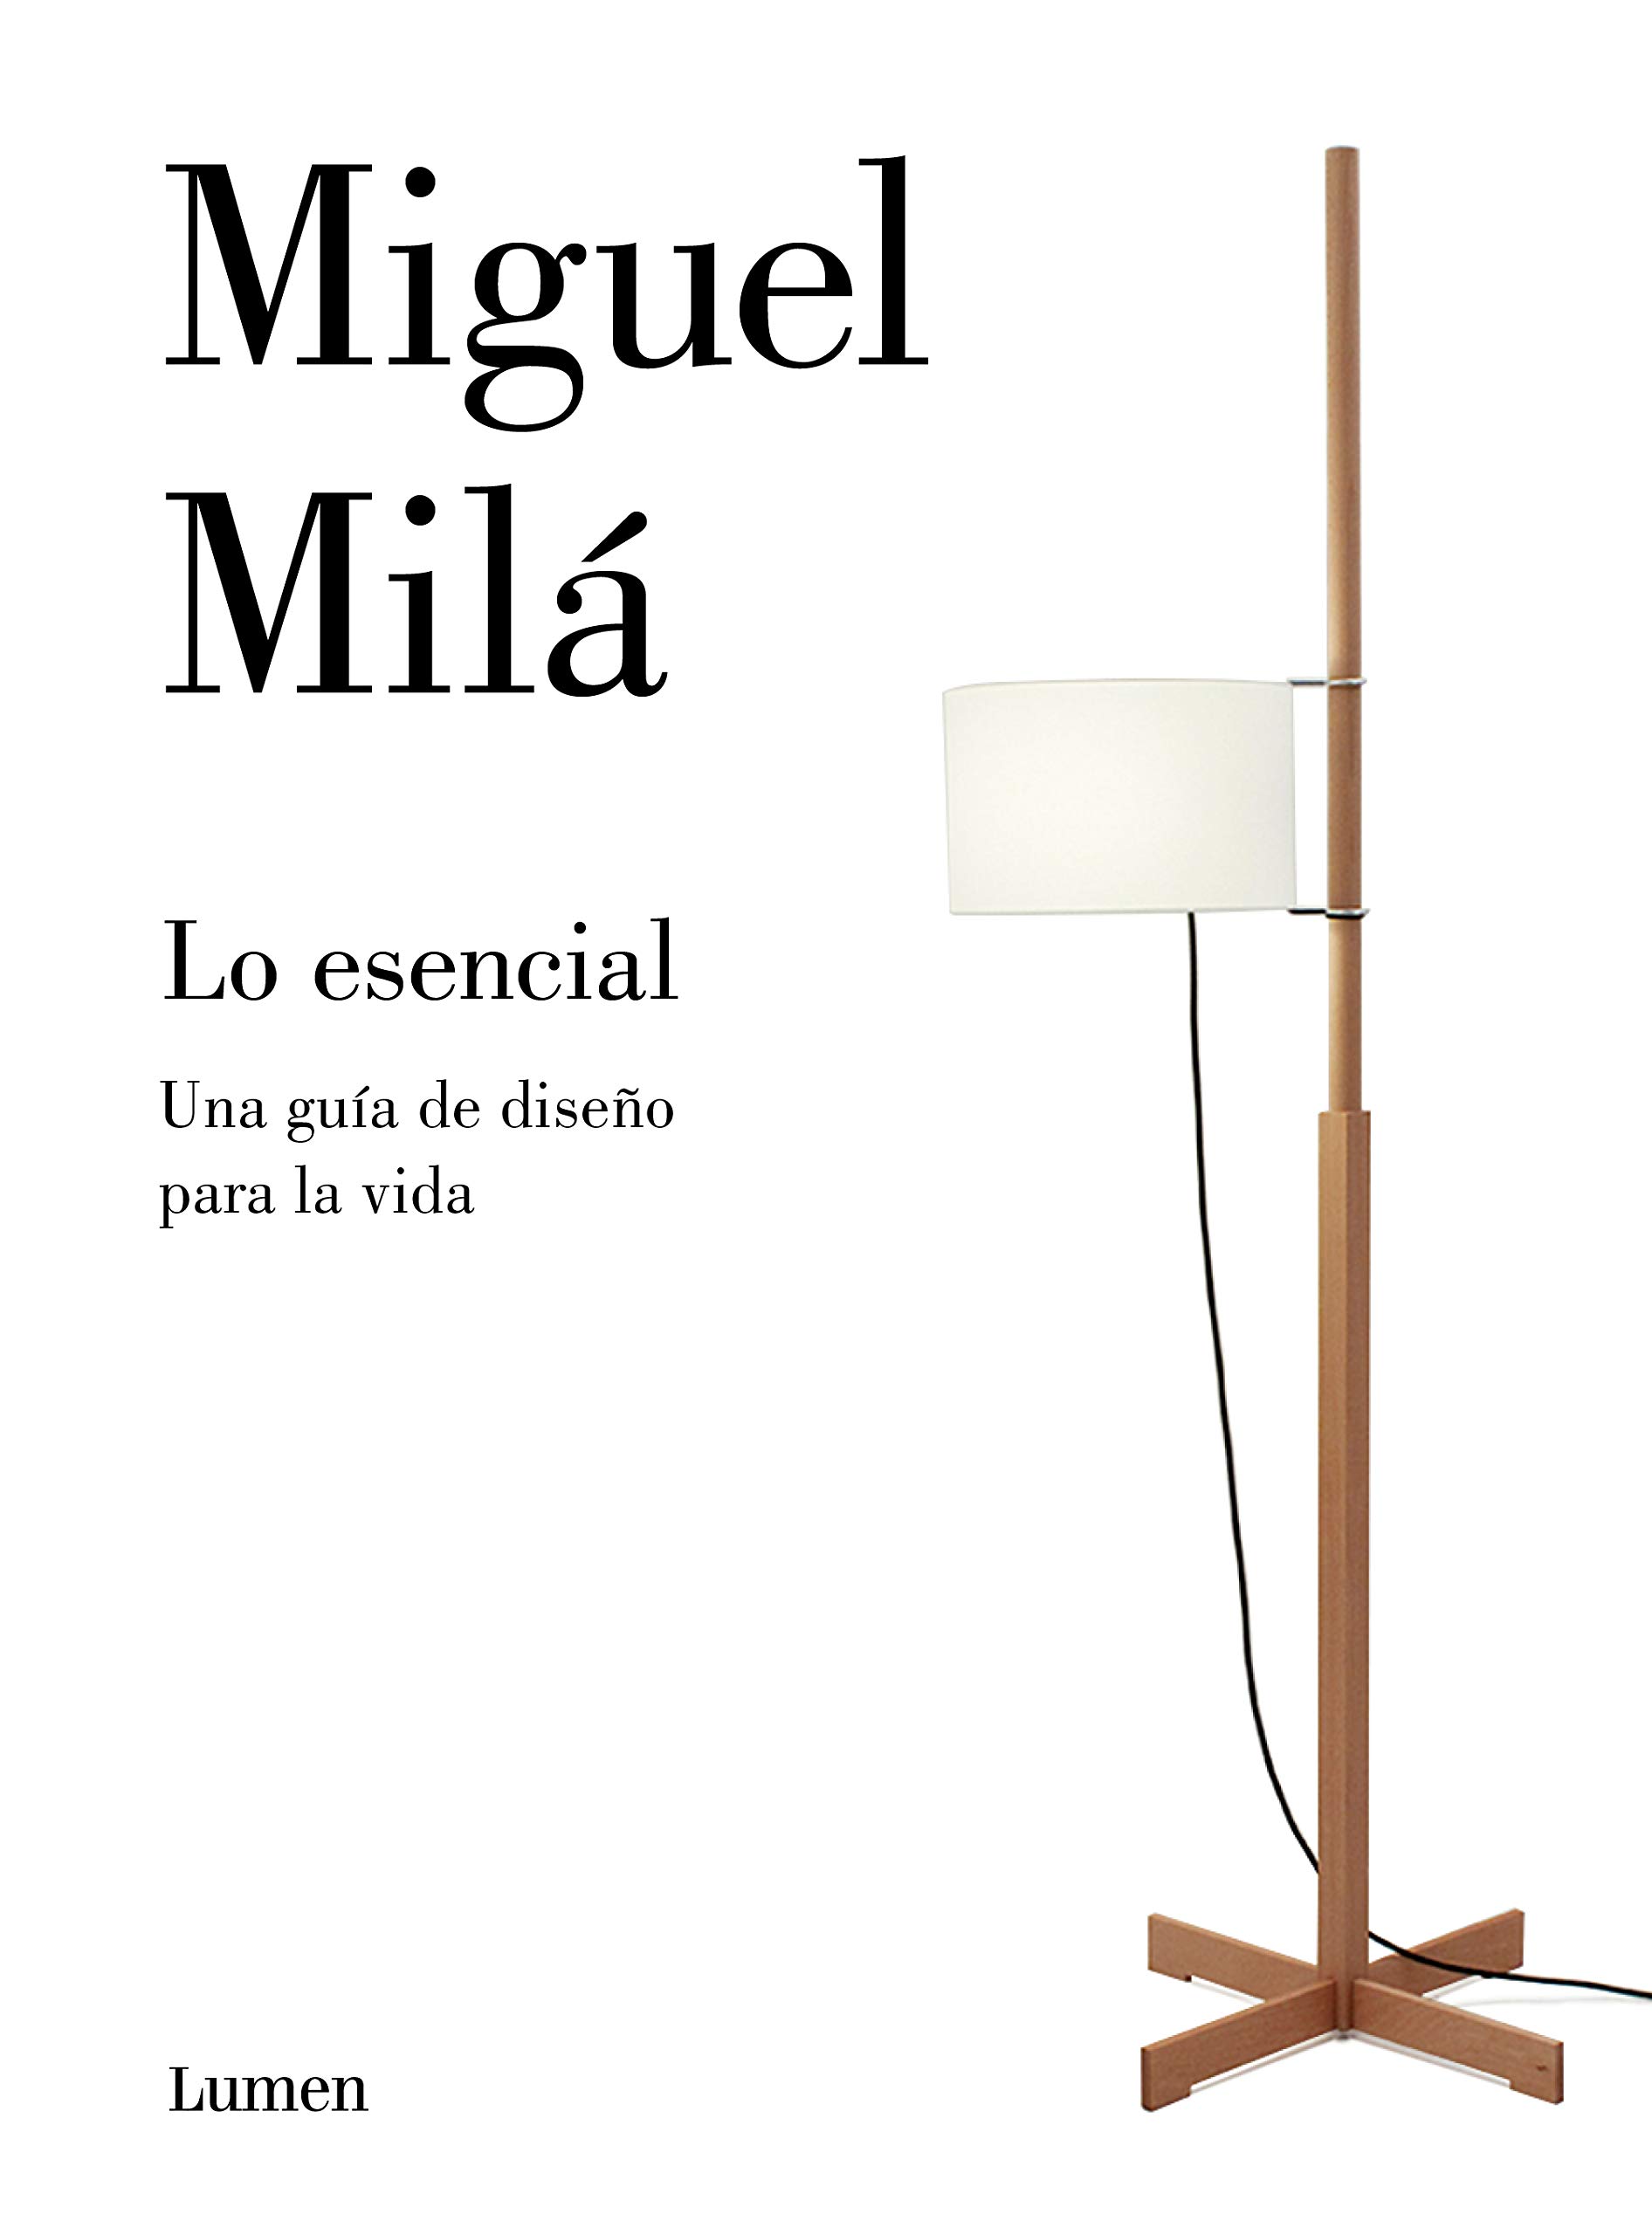 Zenda recomienda: Lo esencial, de Miguel Milá